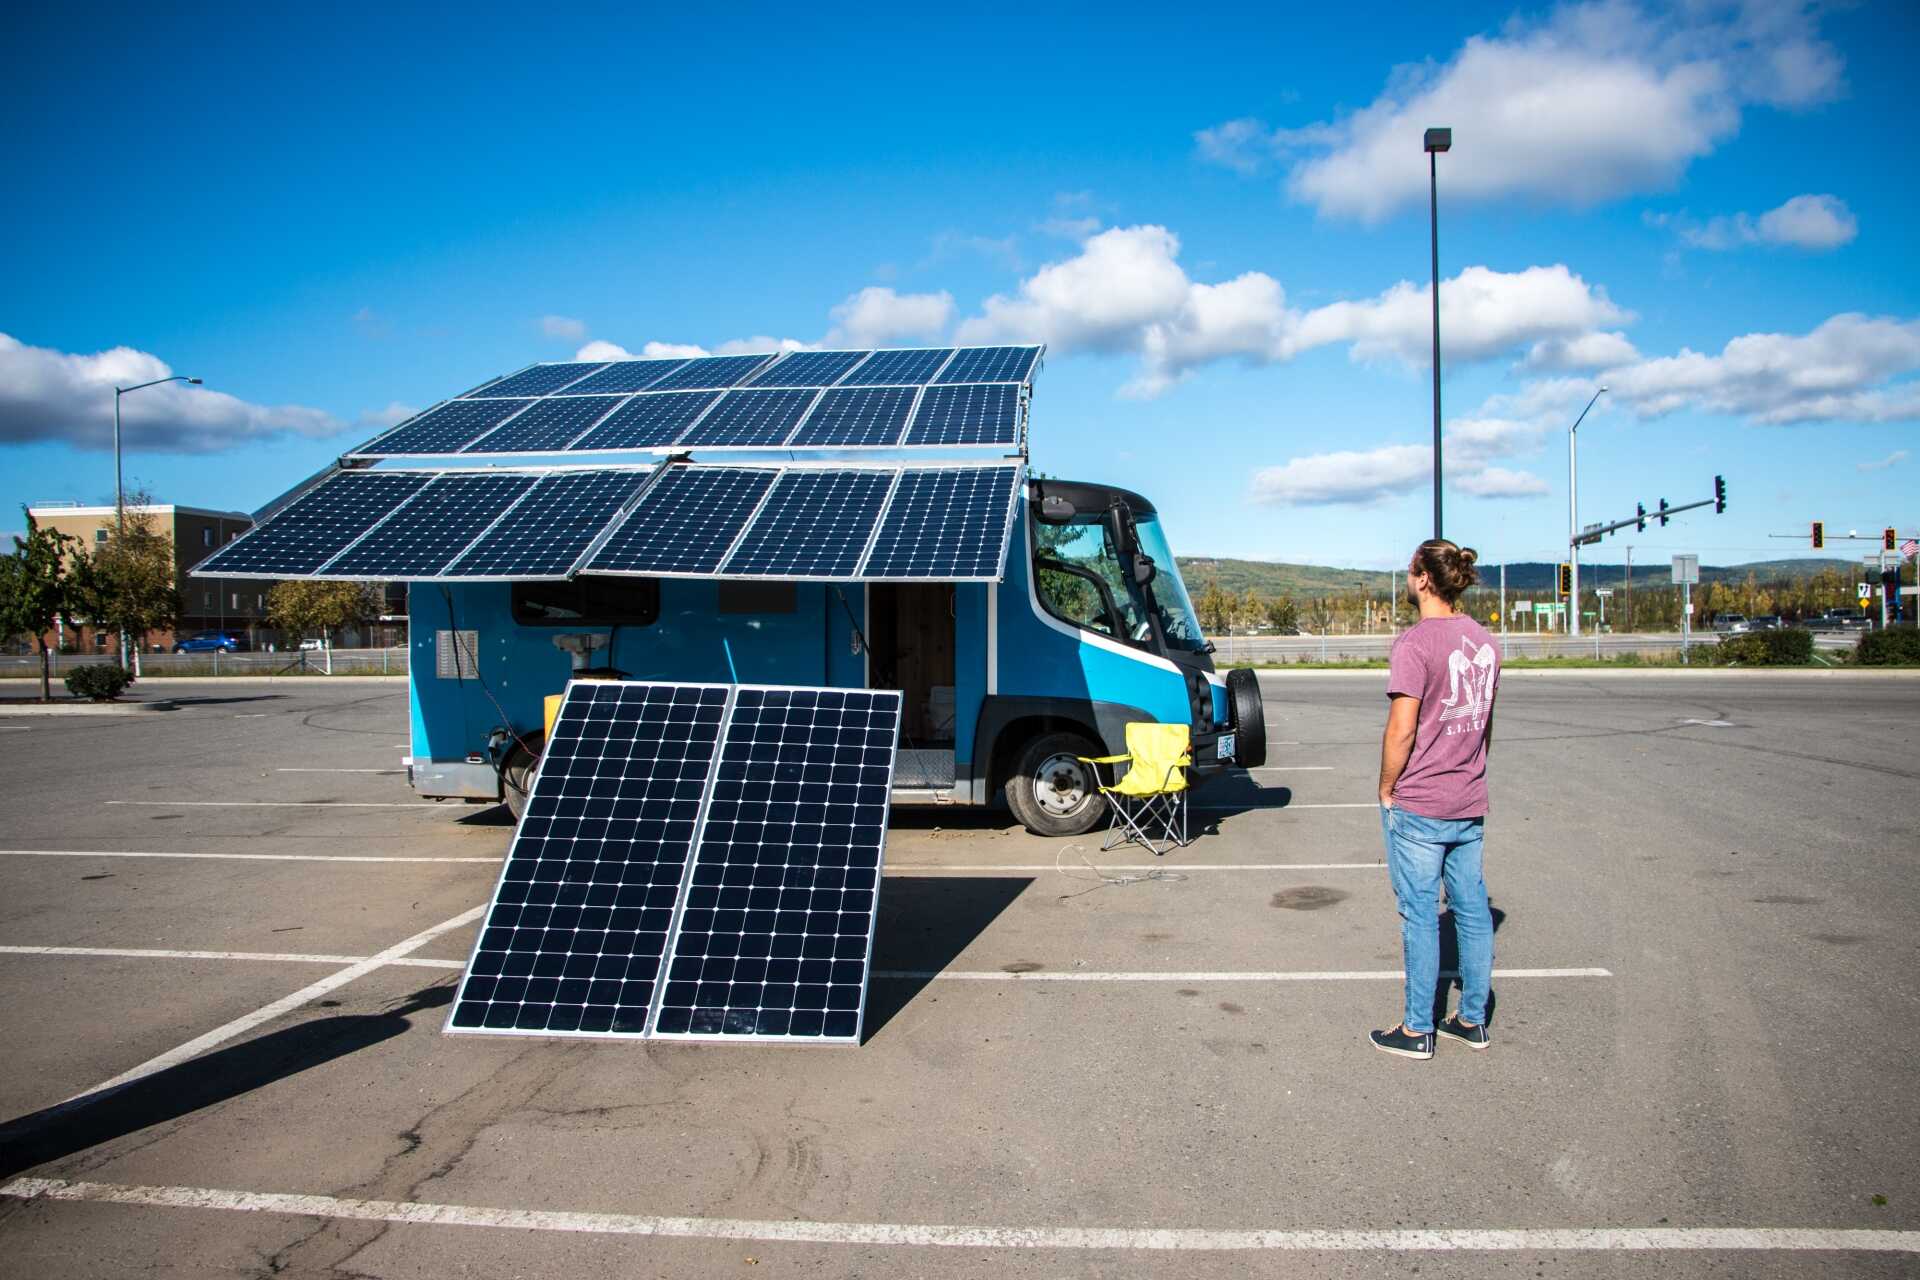 Route del Sol rijdt met een 100% elektrische, op zonne-energie aangedreven camperbus dankzij de zonnetechnologie van SunPower en de steun van Galt Energy